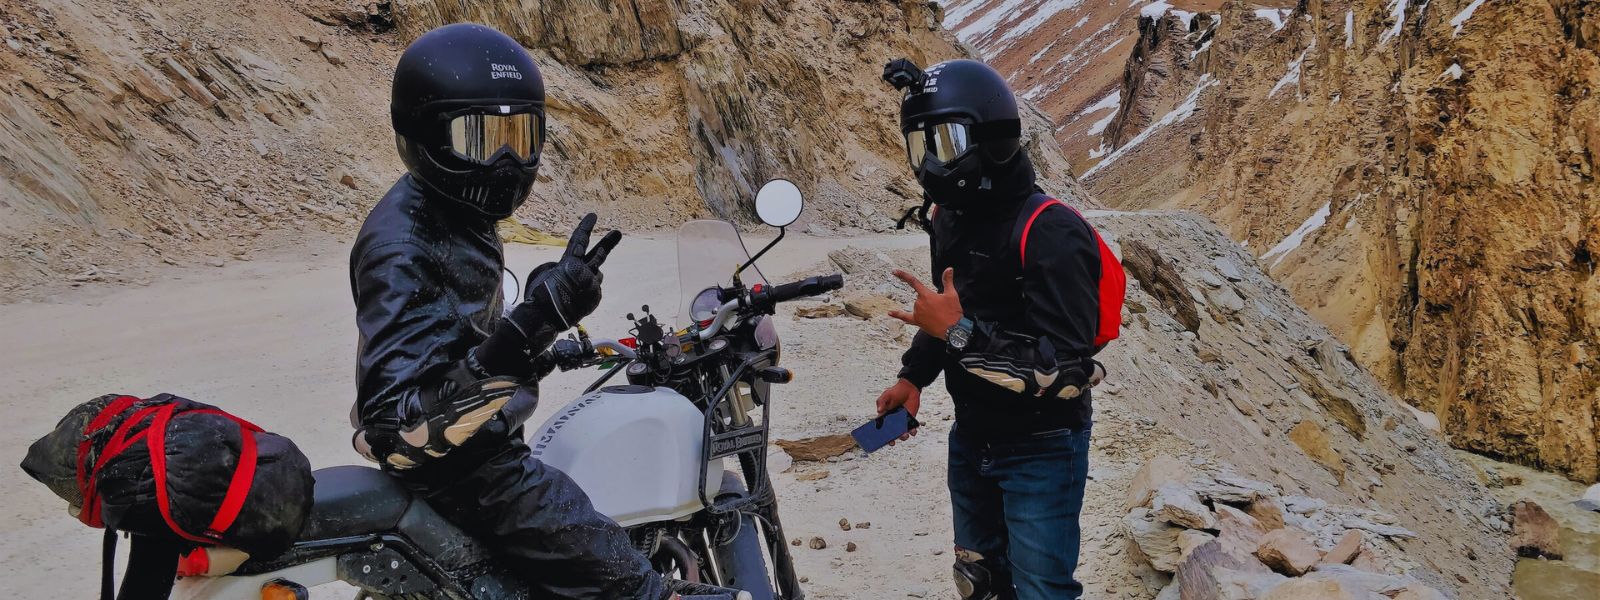 GoPro ou Dashcam : quelle caméra pour filmer en moto et comment bien  choisir - CNET France